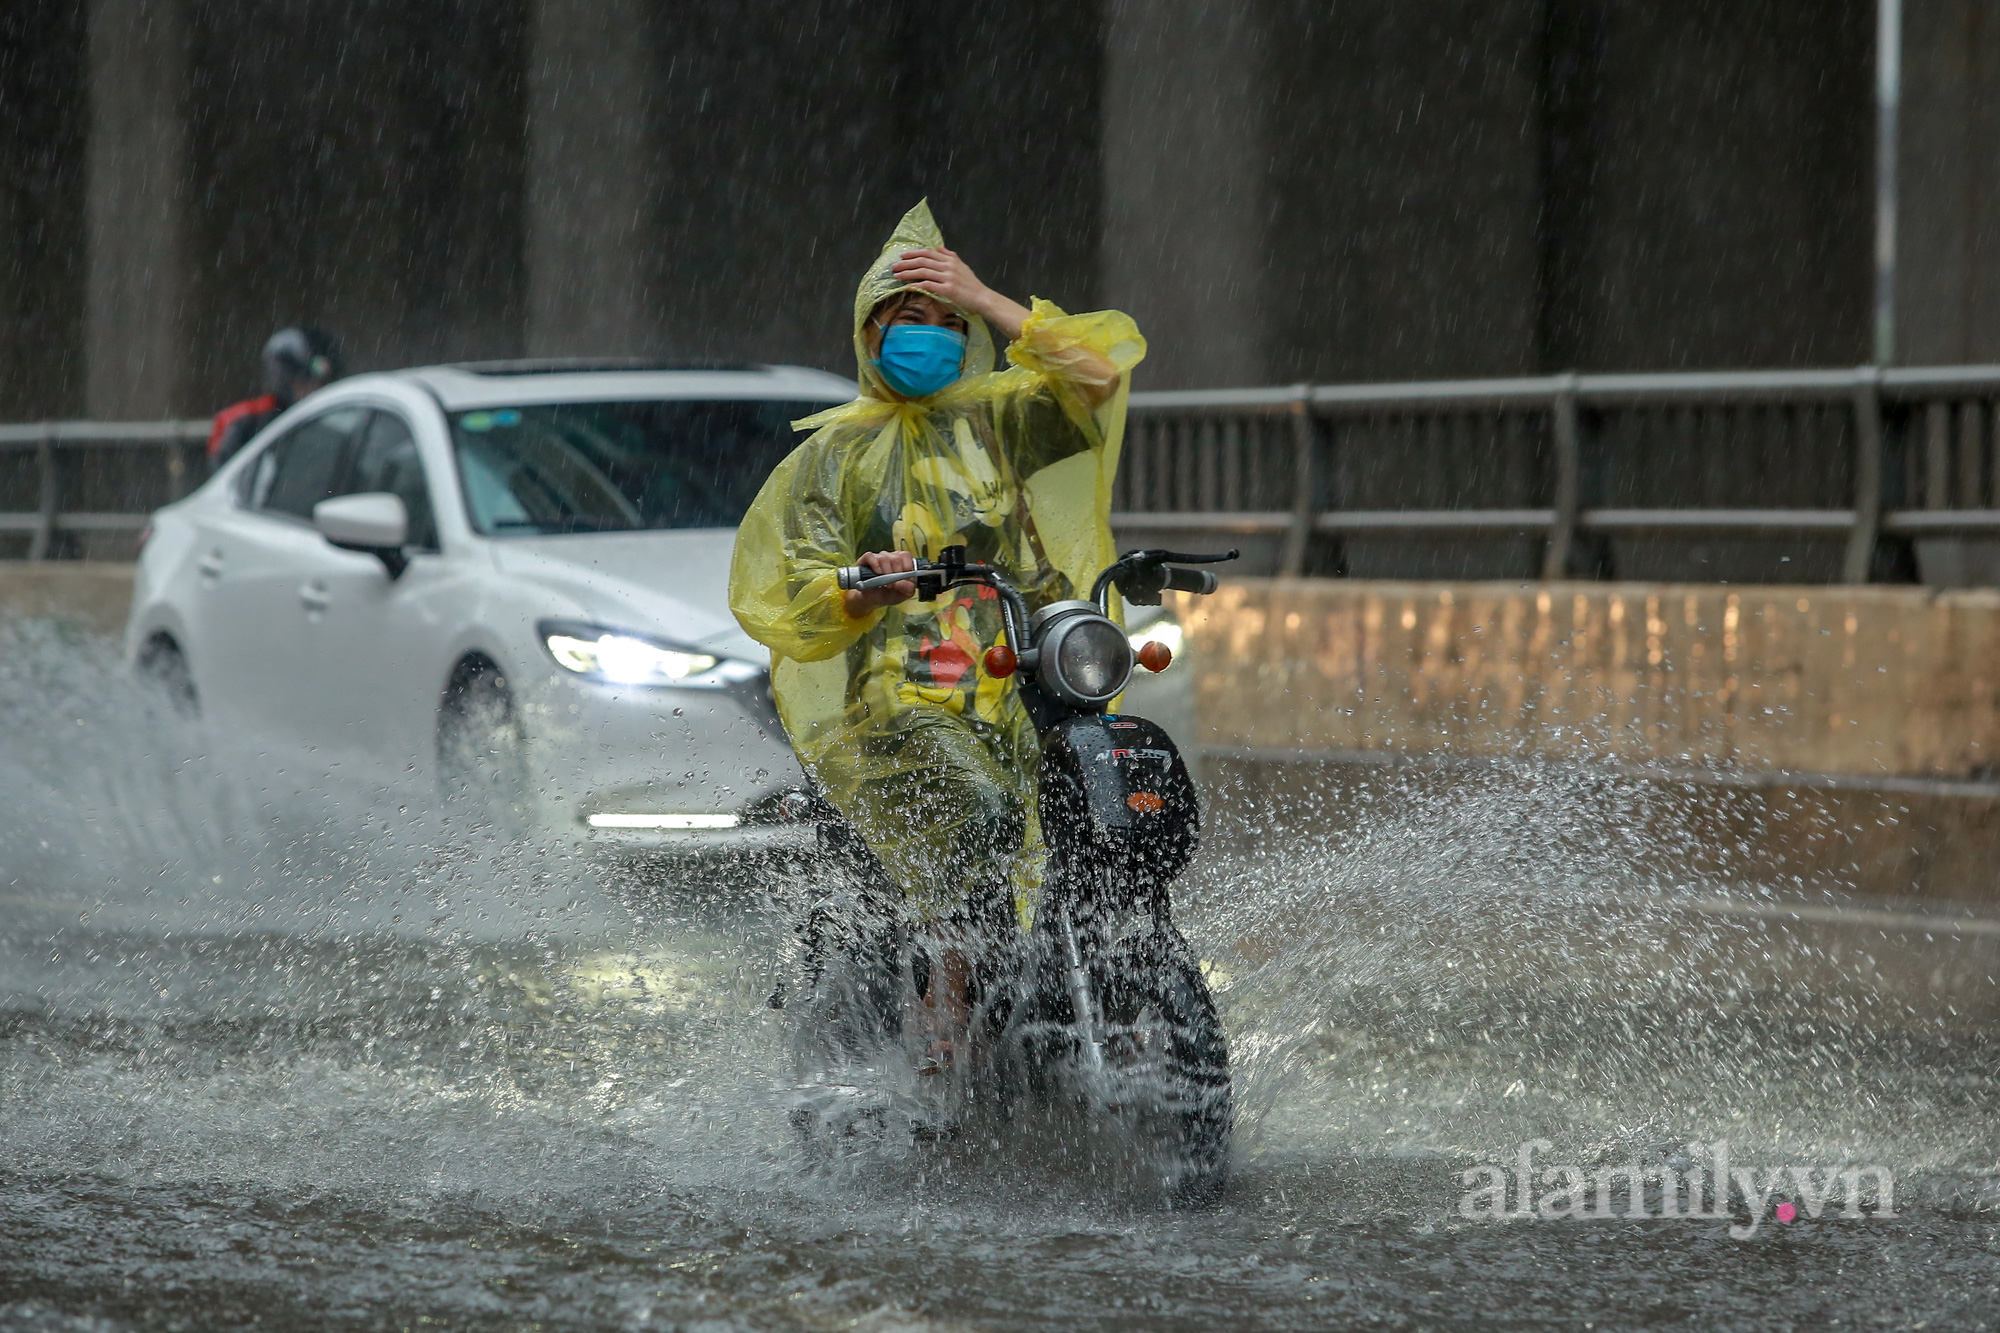 Đường phố ùn tắc, người Hà Nội vật lộn đi làm trong cơn mưa tầm tã - Ảnh 12.